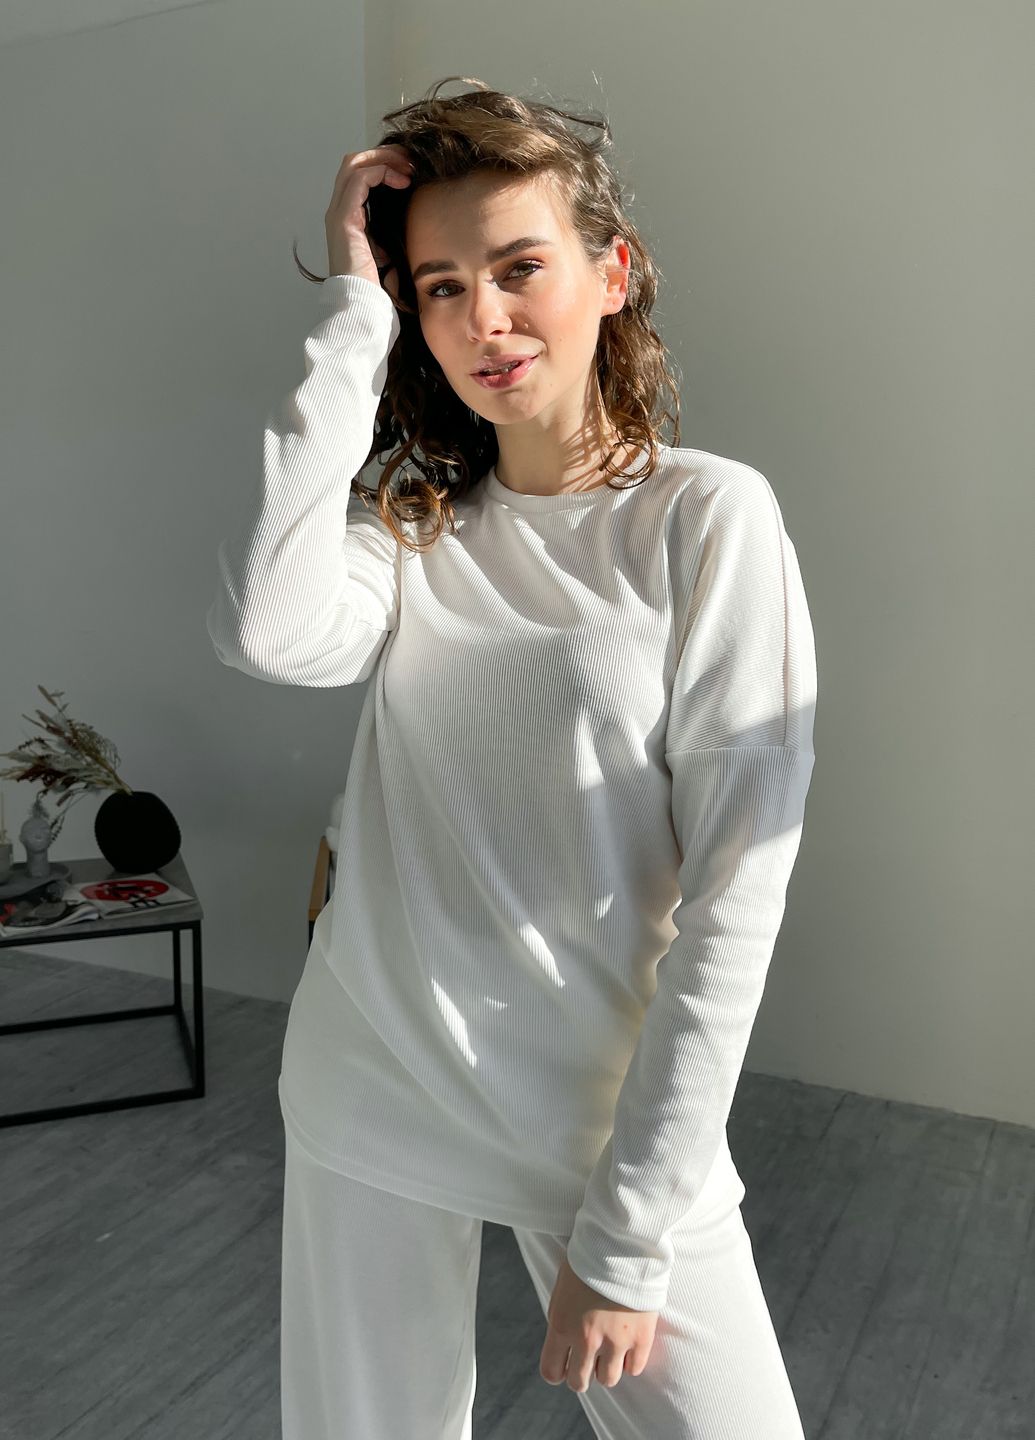 Купить Белый костюм женский в рубчик с широкими штанами Merlini Мантуя 100000406, размер XS-M в интернет-магазине